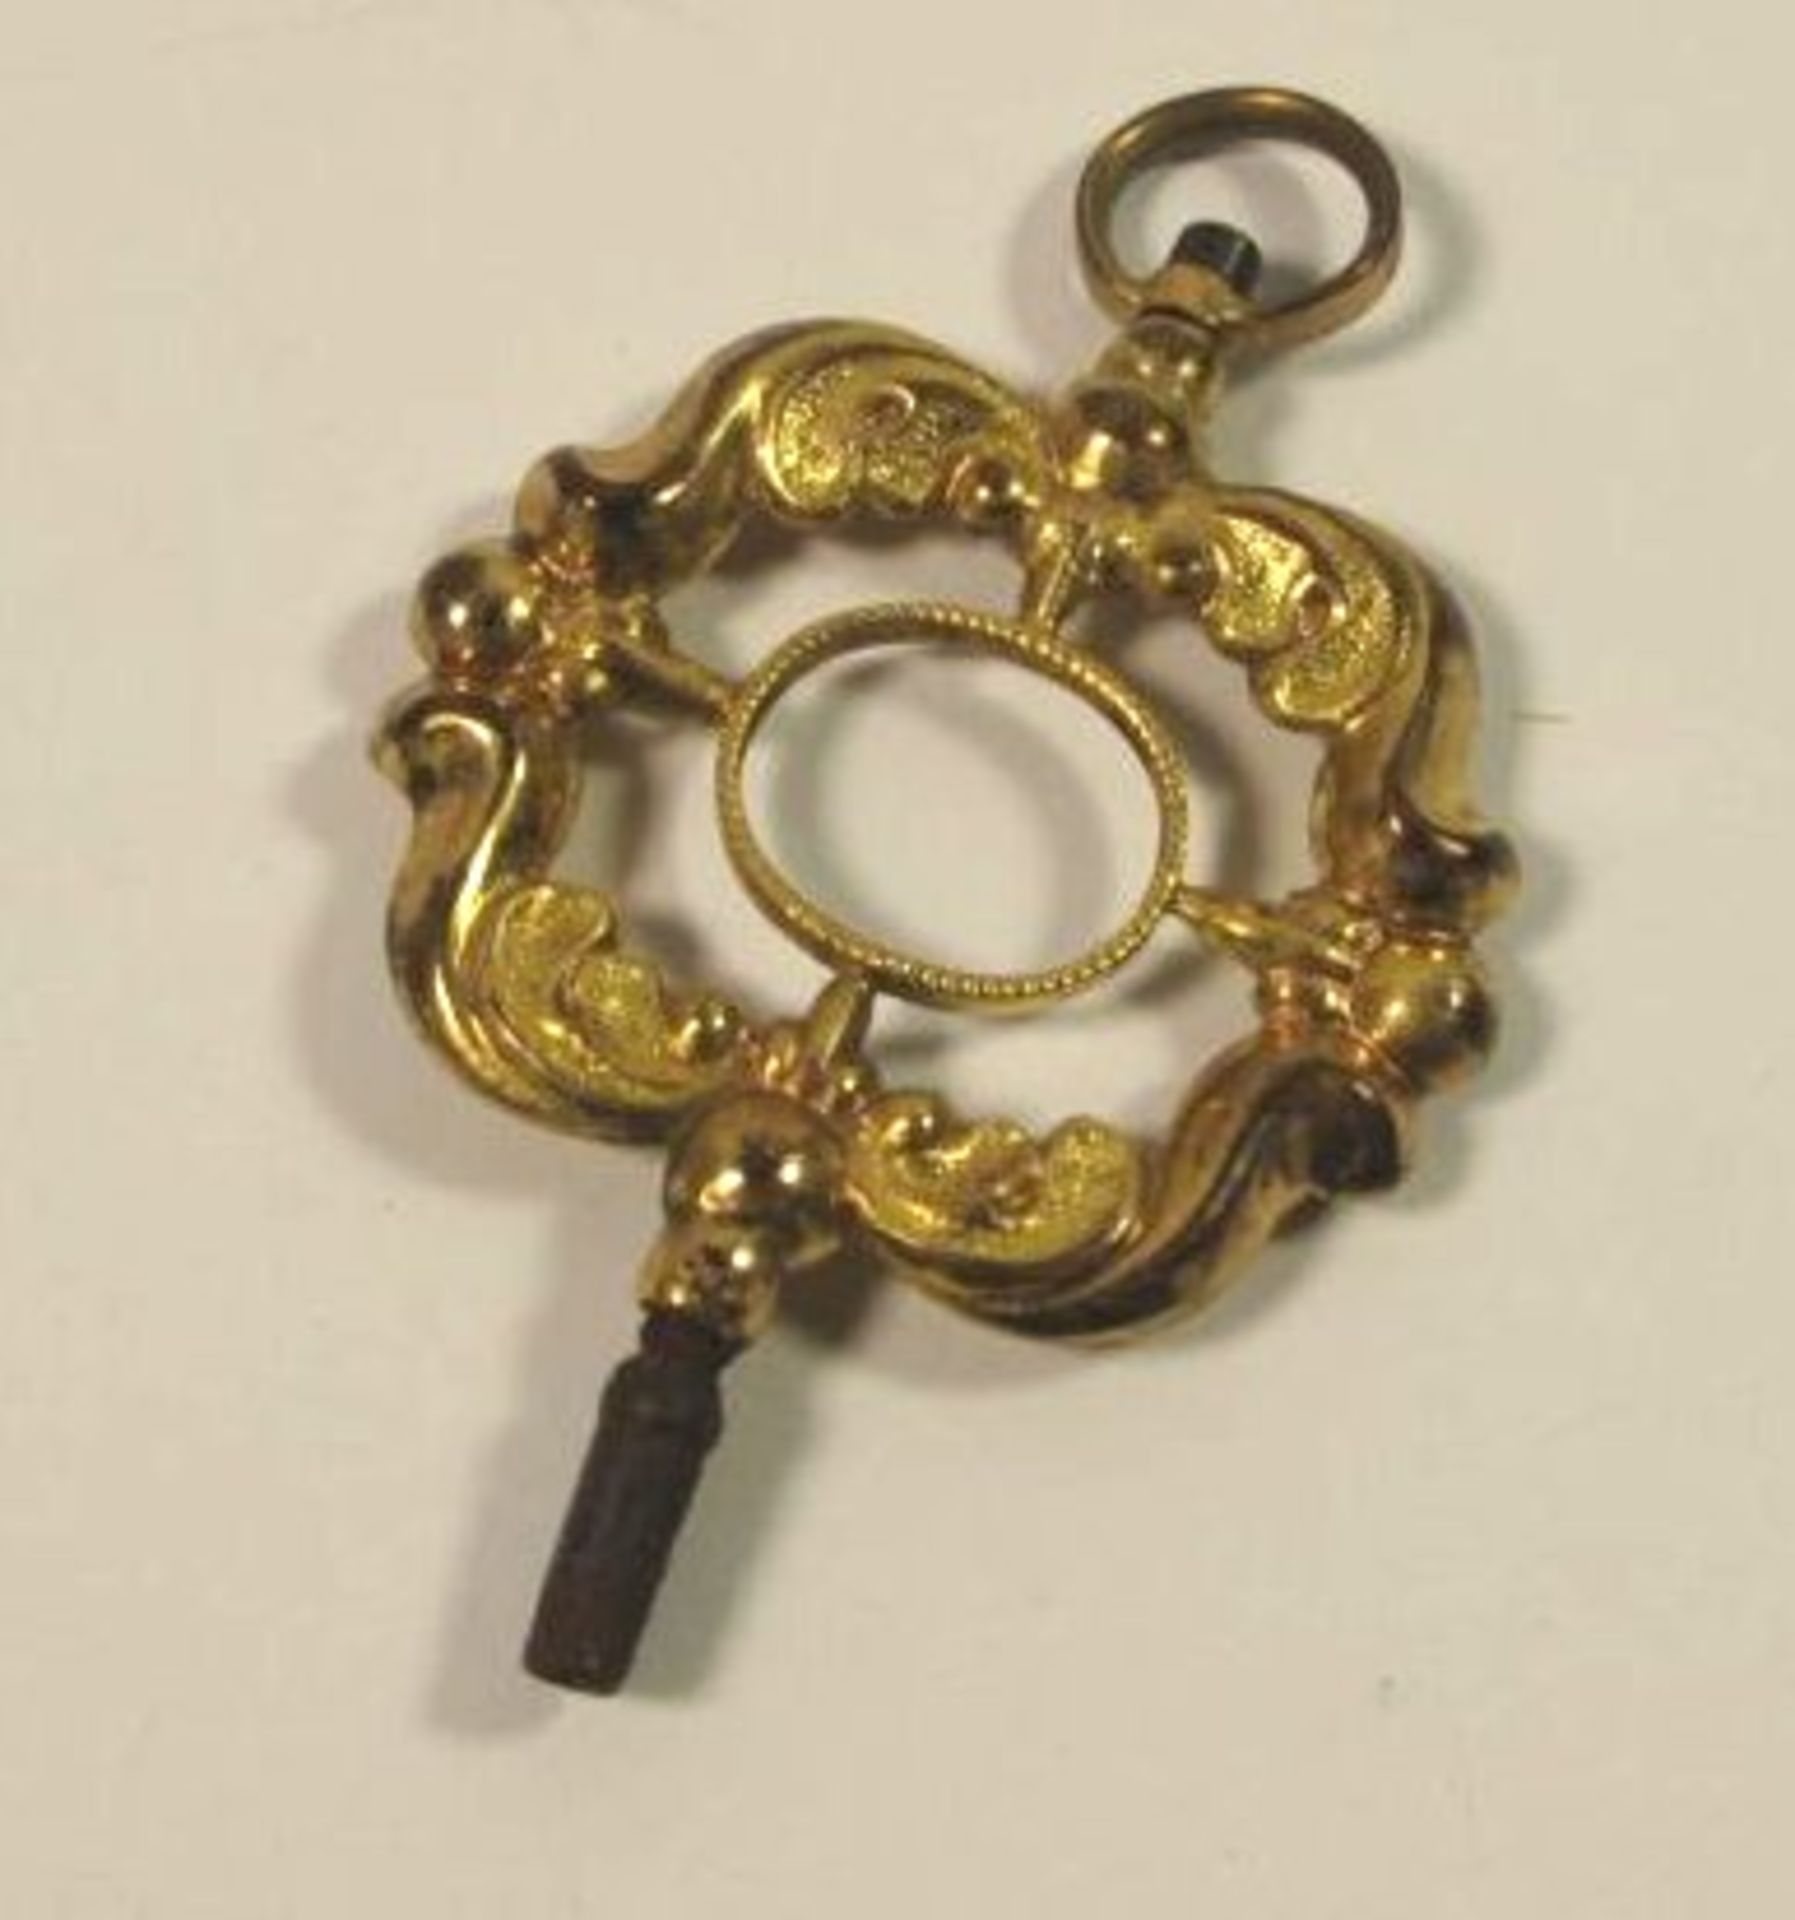 Prunk-Uhrenschlüssel, 19. Jhd., Schaumgold, Alters-u. Gebrauchsspuren, L-4,5cm.